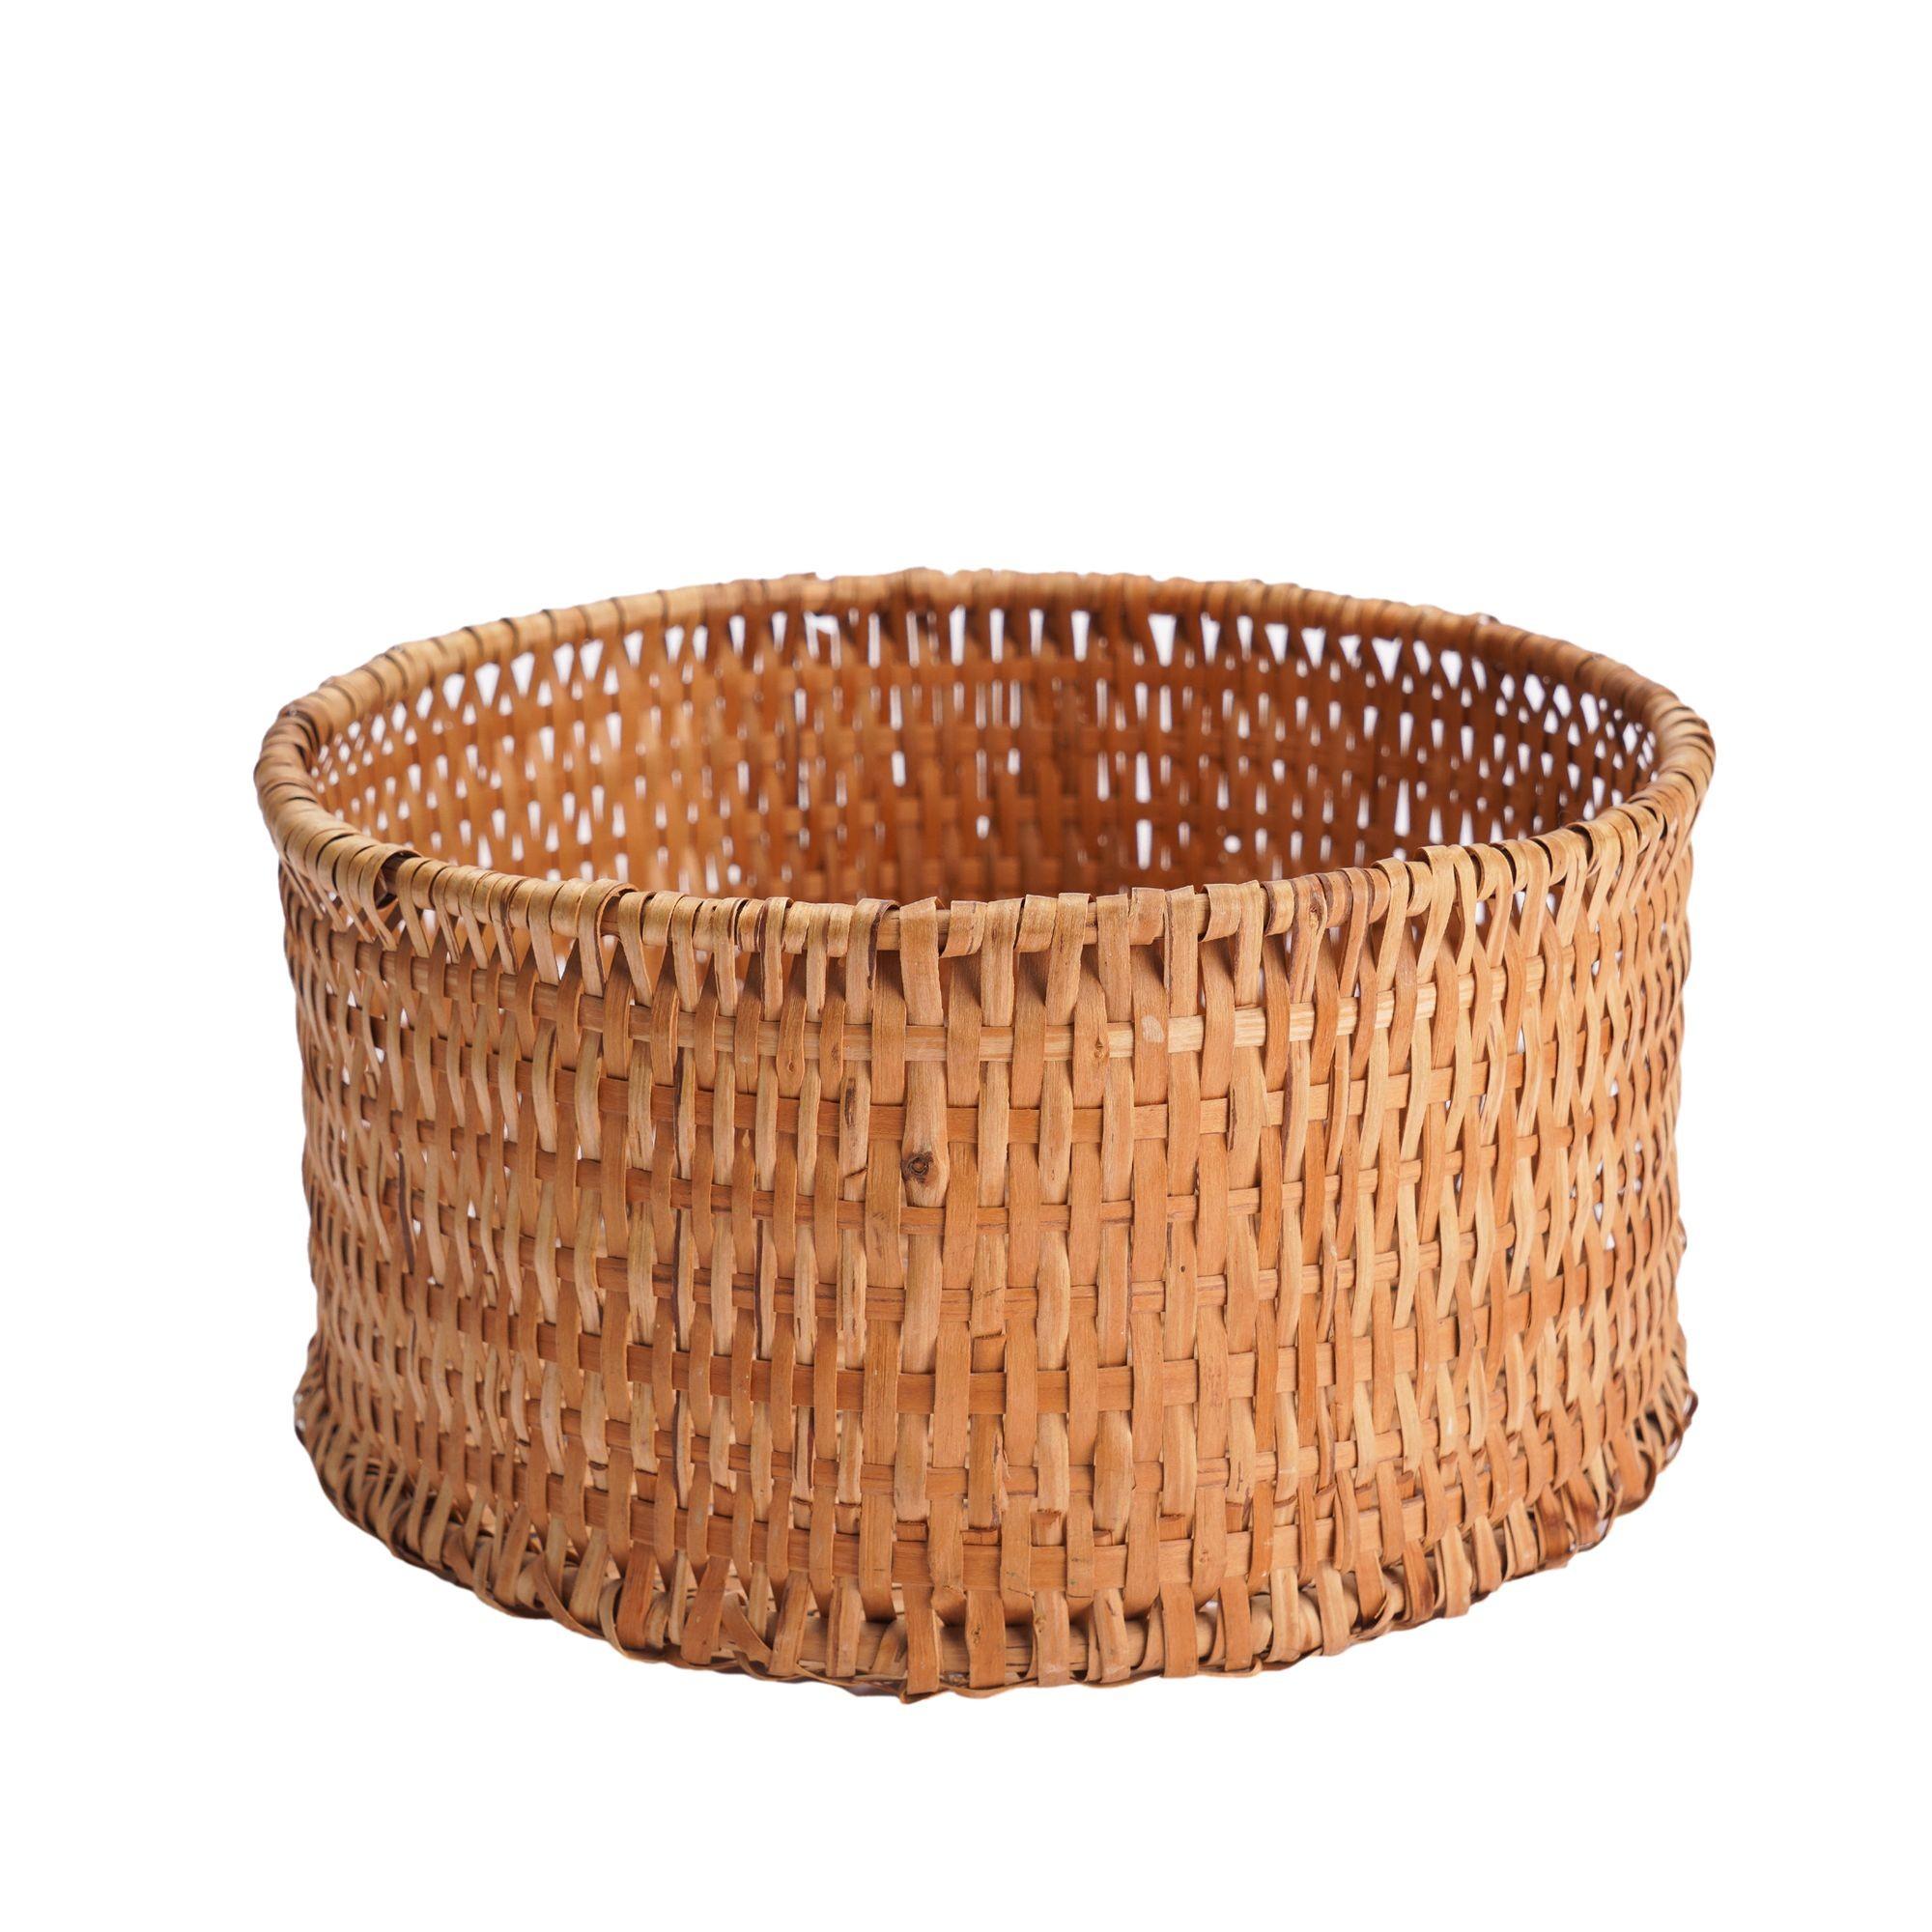 American Cherokee split willow splint basket, 1890-1910